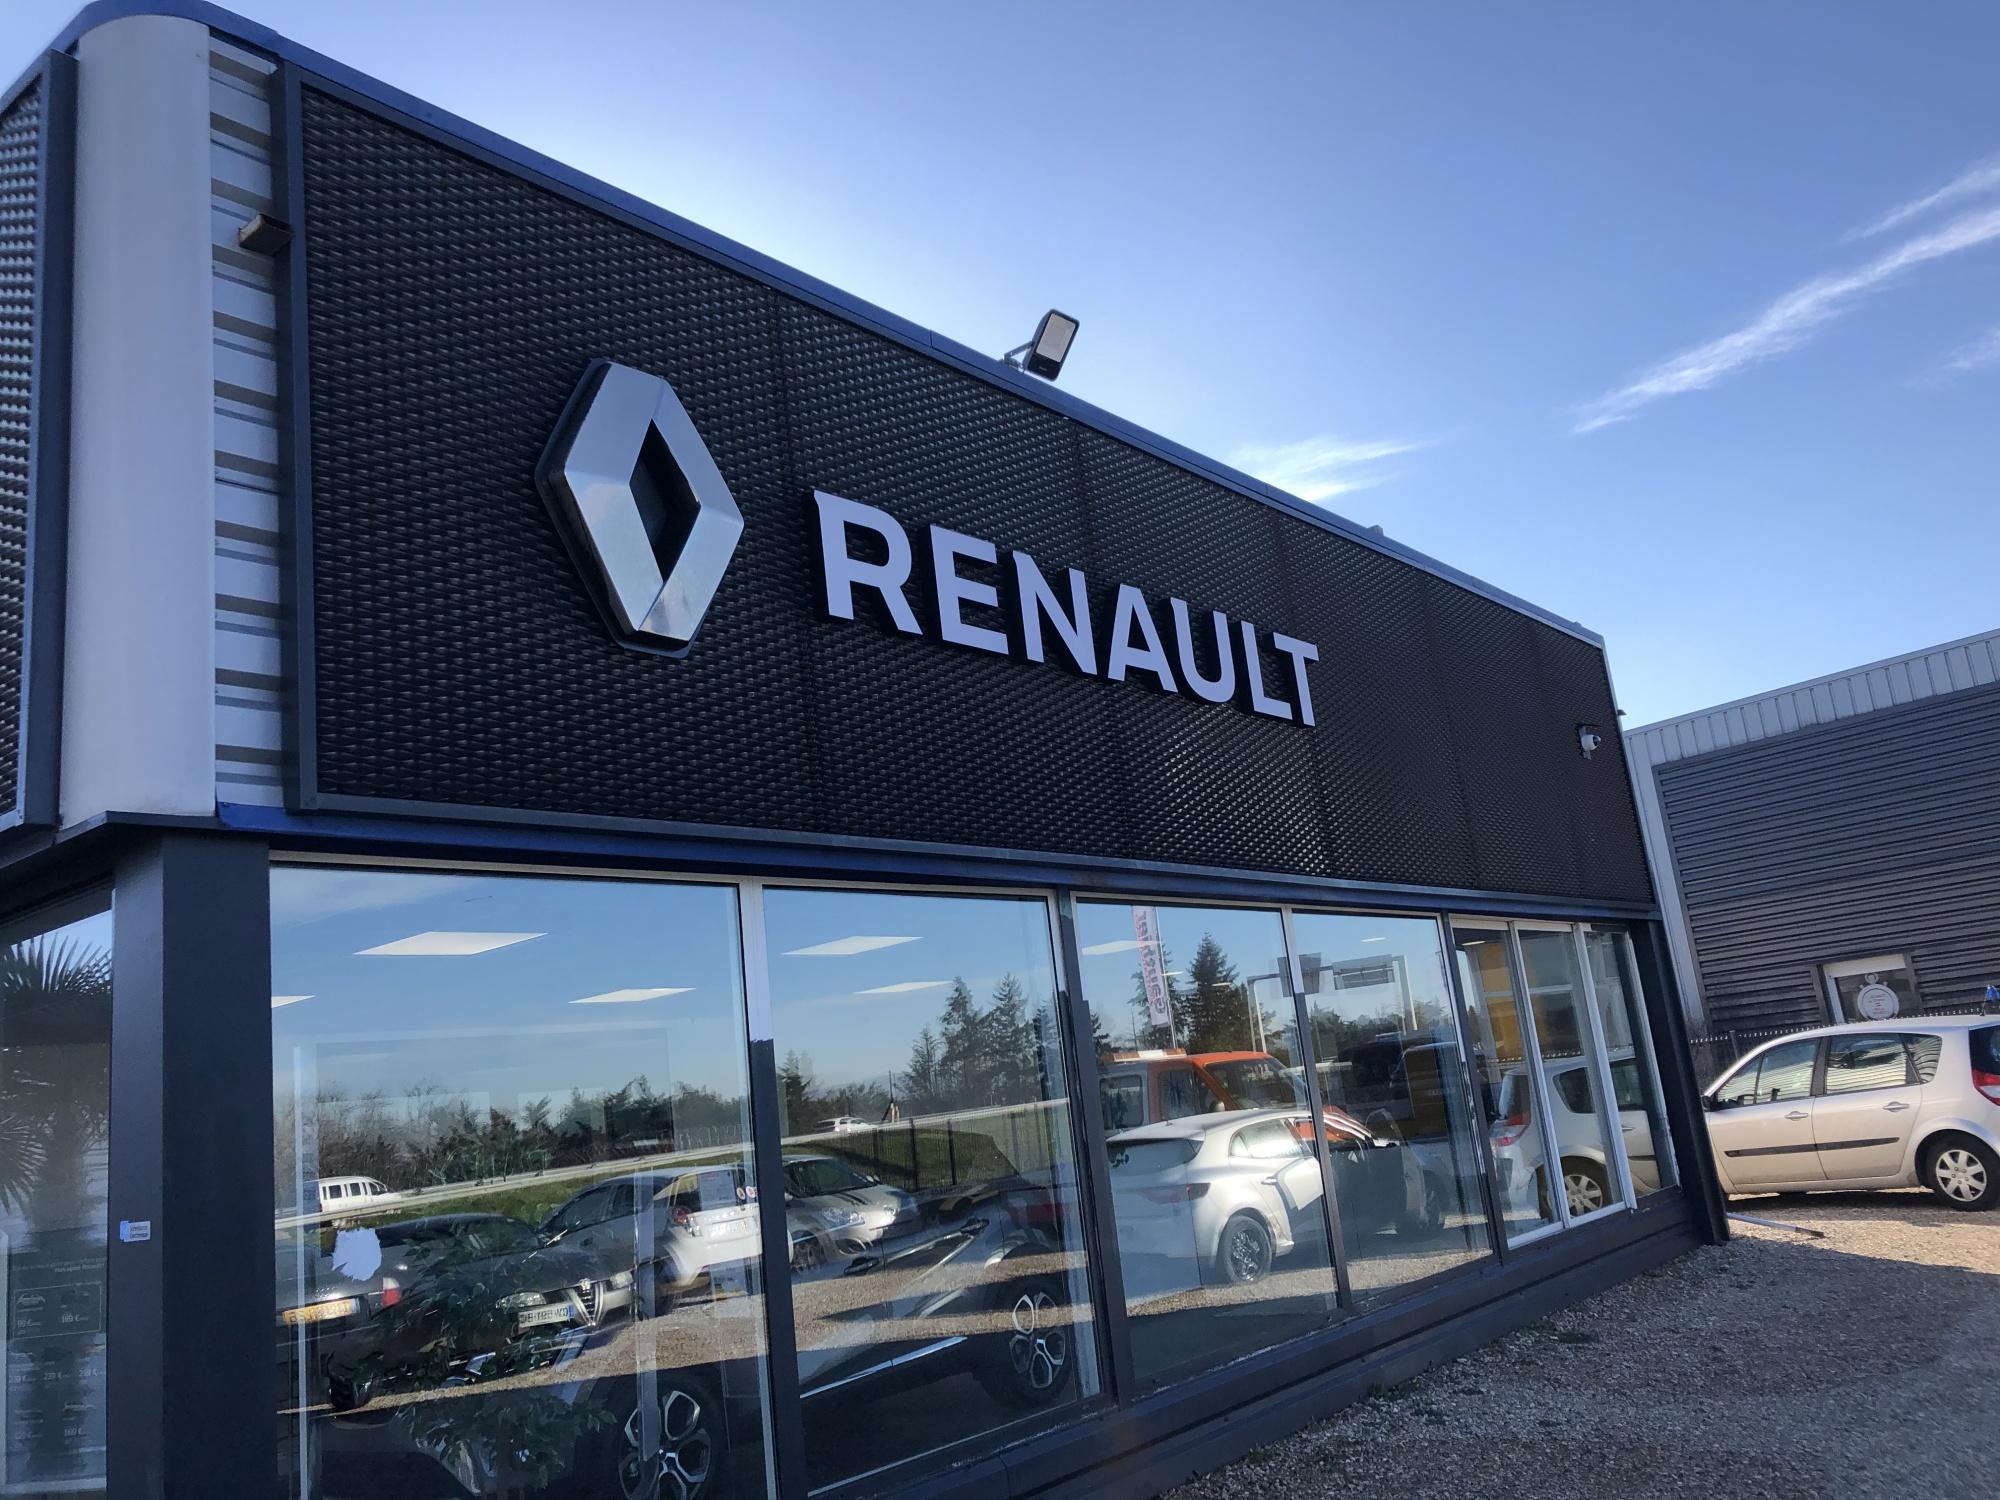 Renault - Agence Martins Bourg De Péage